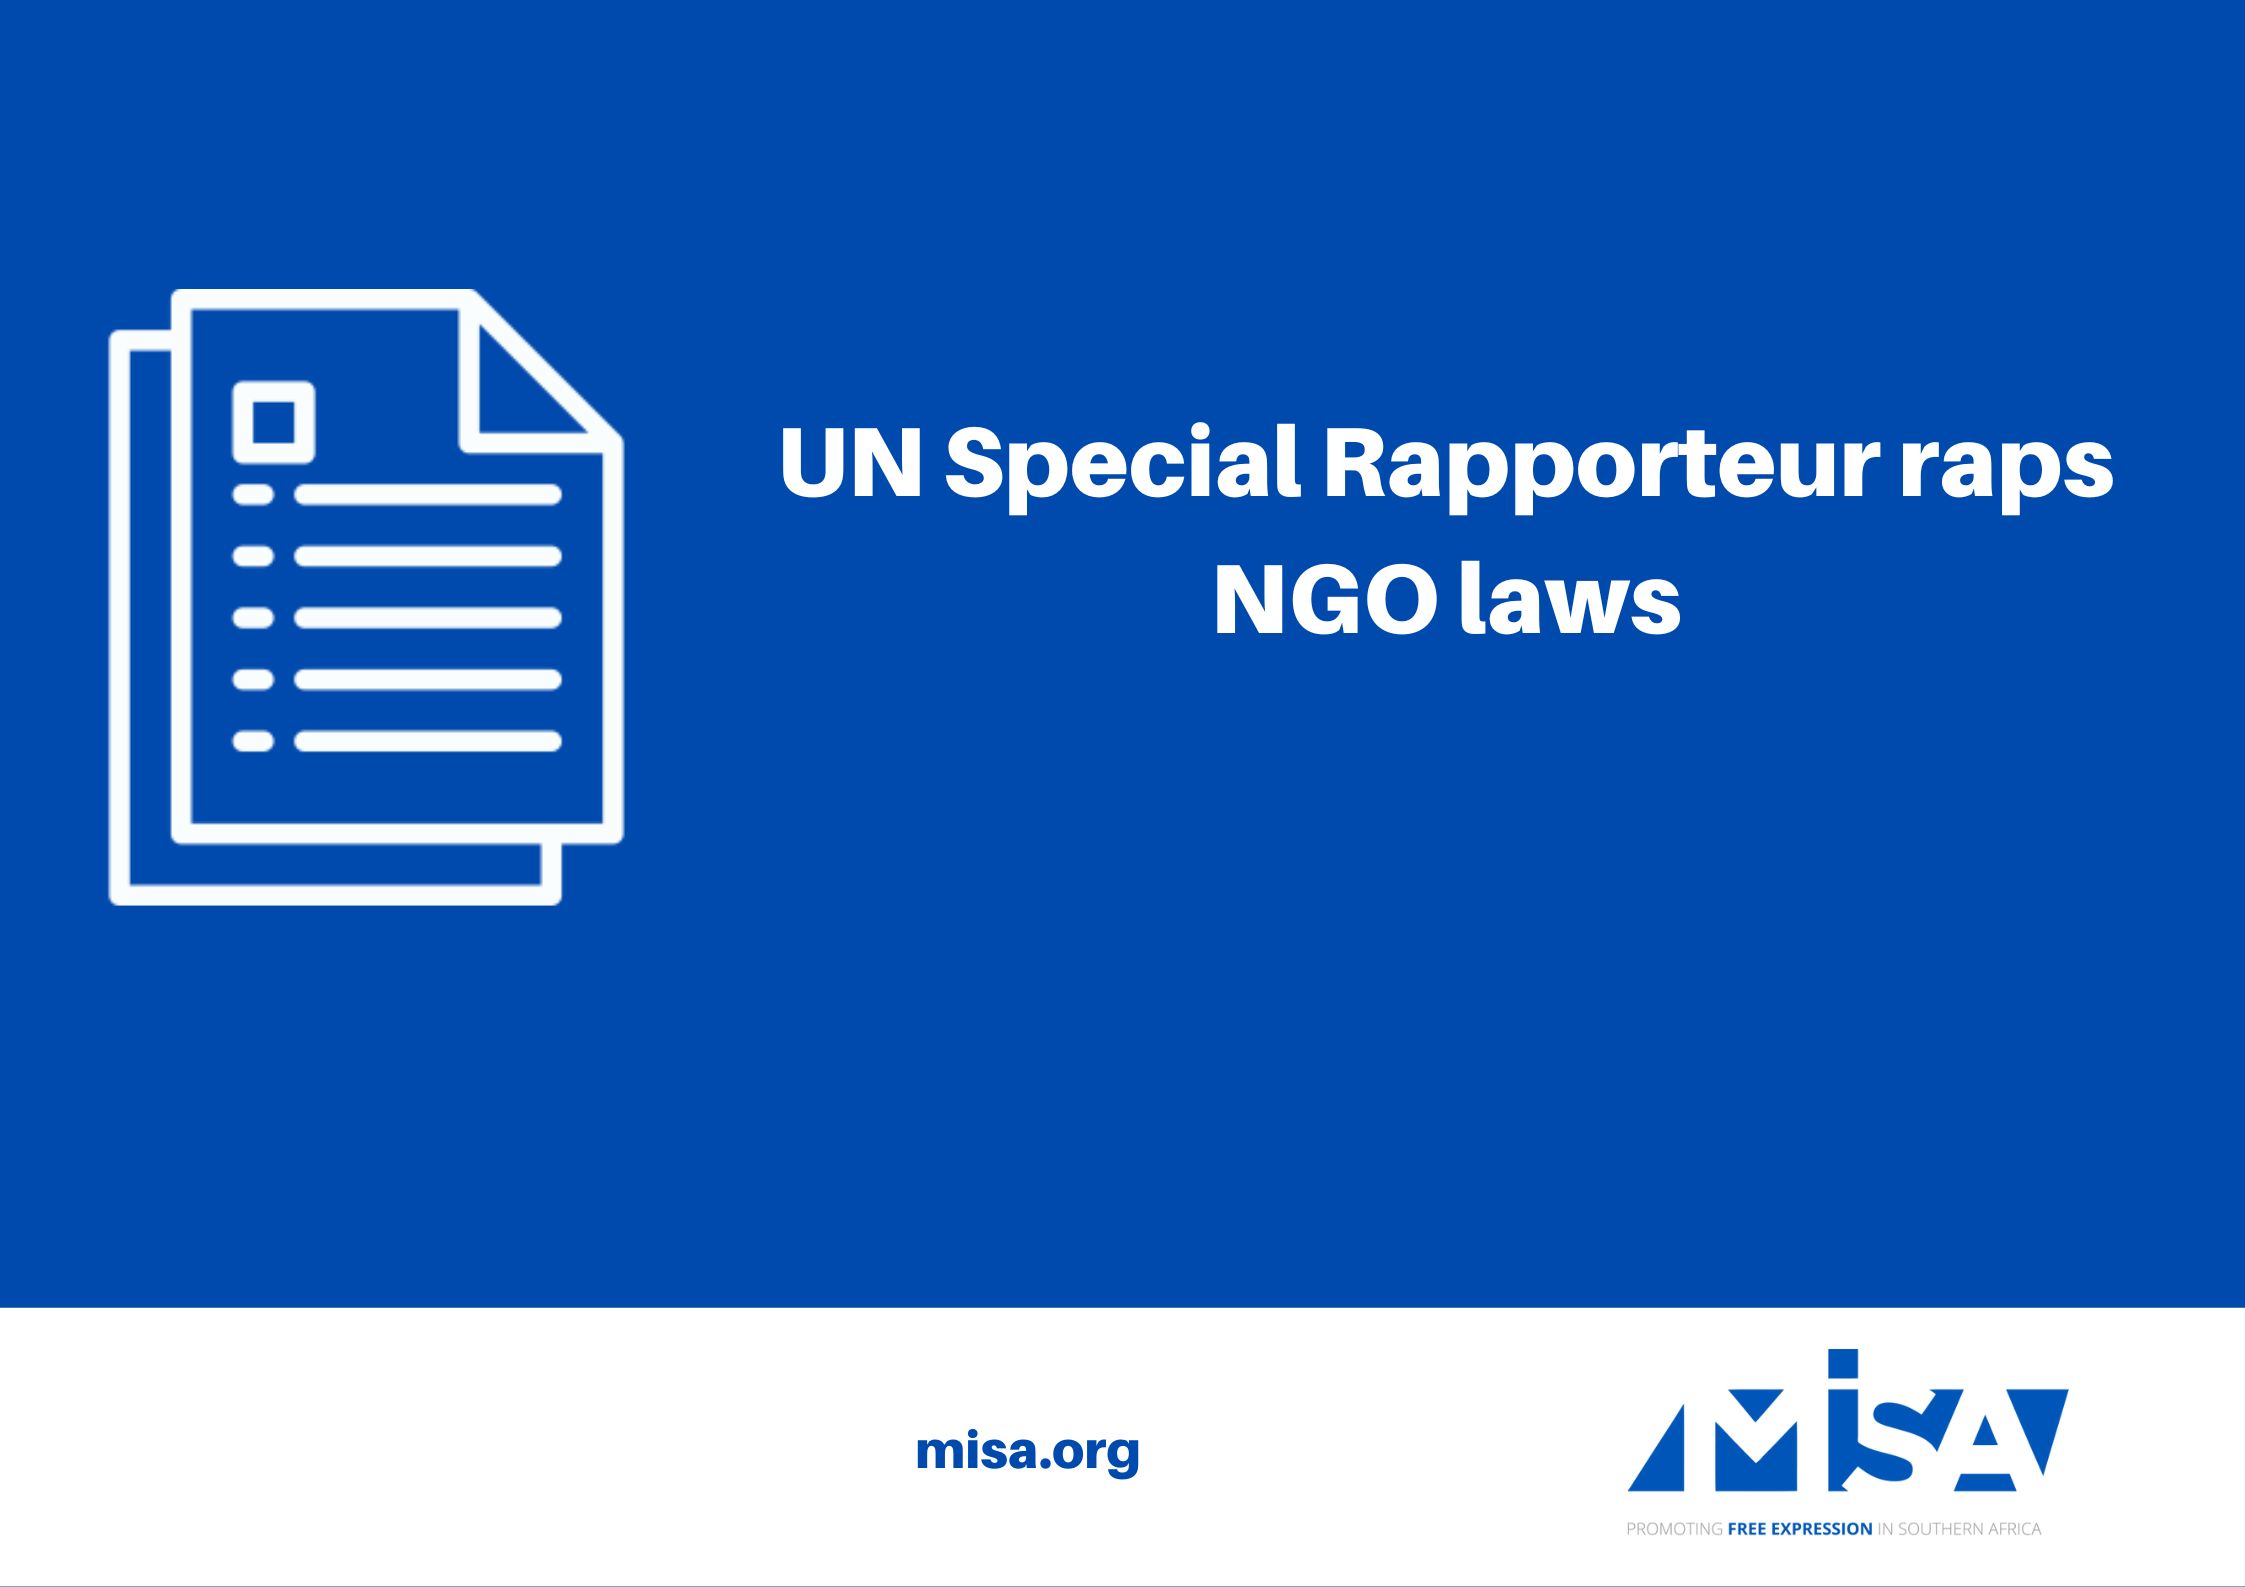 UN Special Rapporteur raps NGO laws